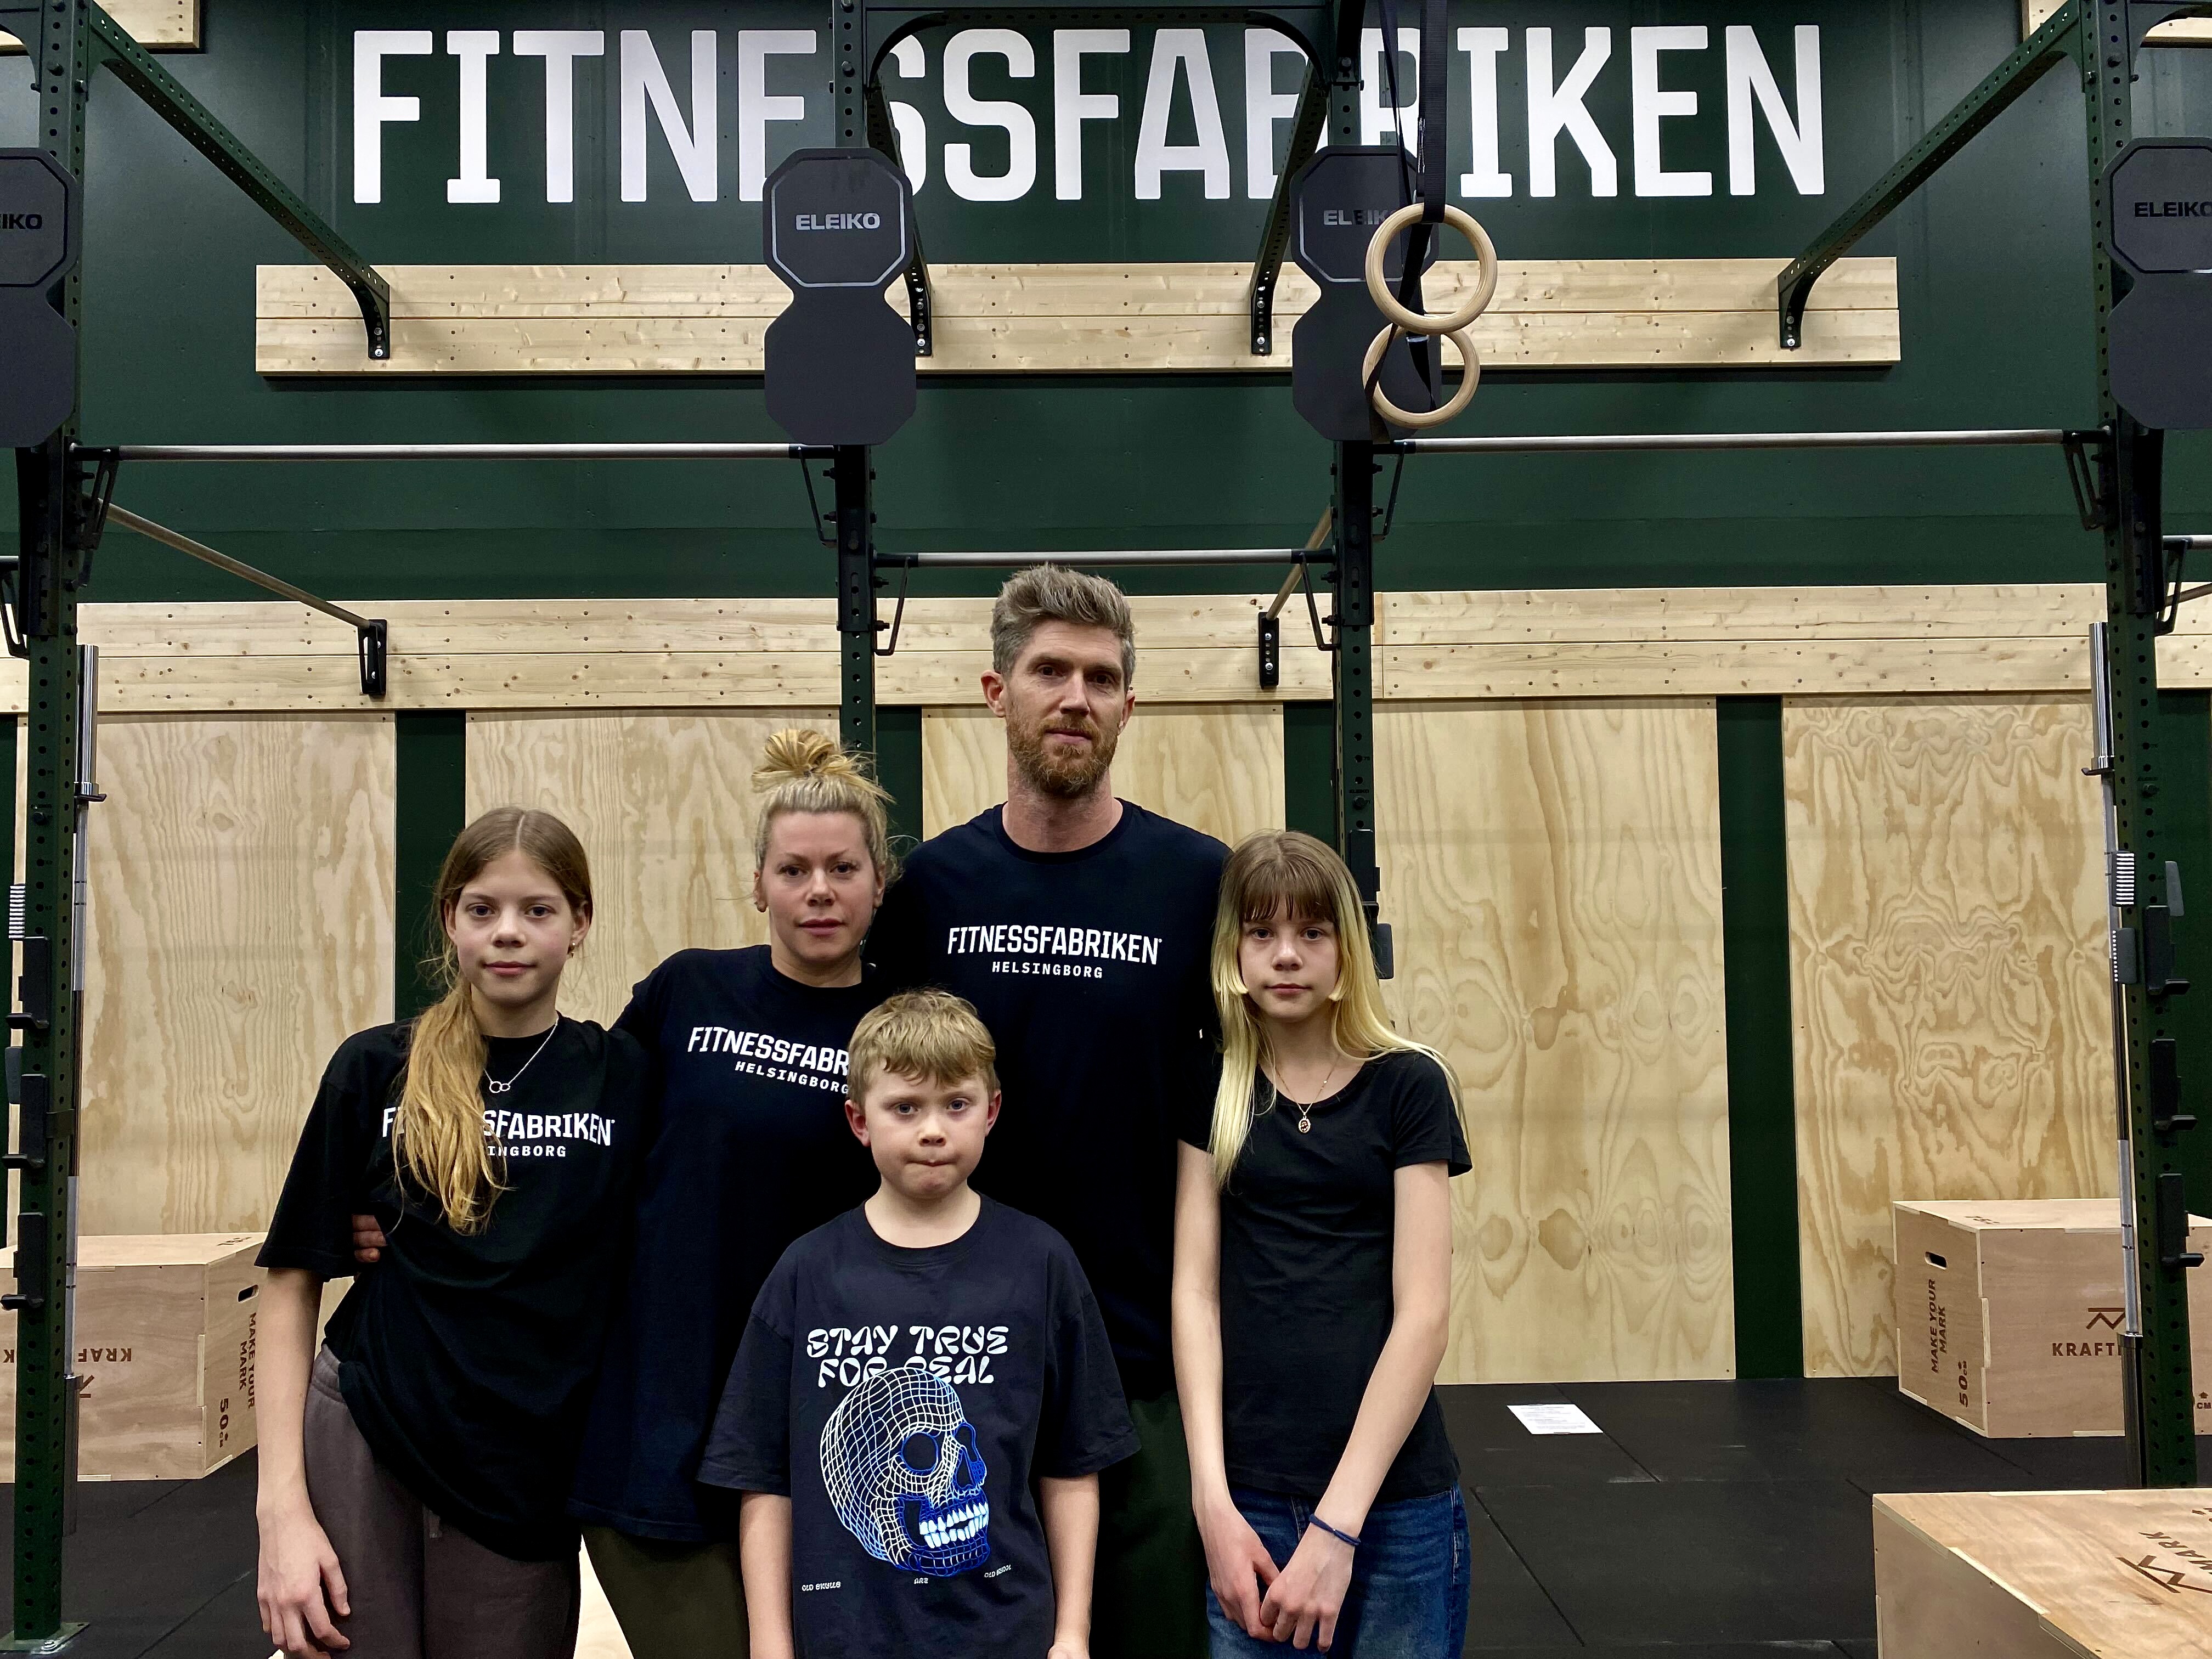 Fitnessfabriken är familjeägt. Här är ägarna Johanna Åhfeldt och sambon Jesper Lindquist tillsammans med (från vänster) Billie Åhfeldt, Charlie Åhfeldt och Ellie Åhfeldt.